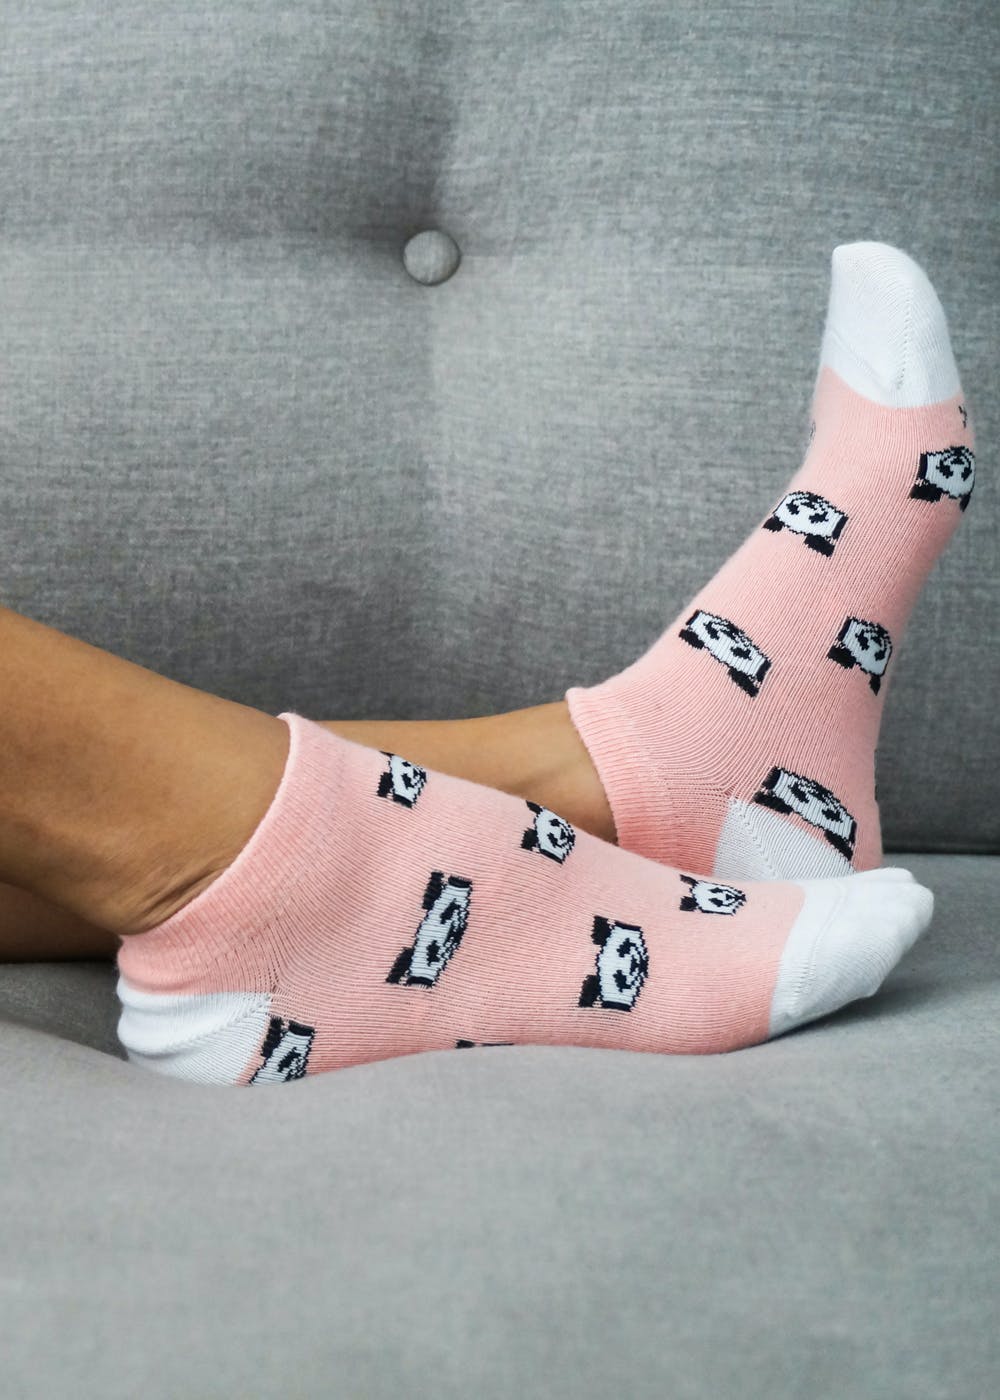 https://imgshopimages.lbb.in/catalog/product/w/o/women_s_socks-6.jpg